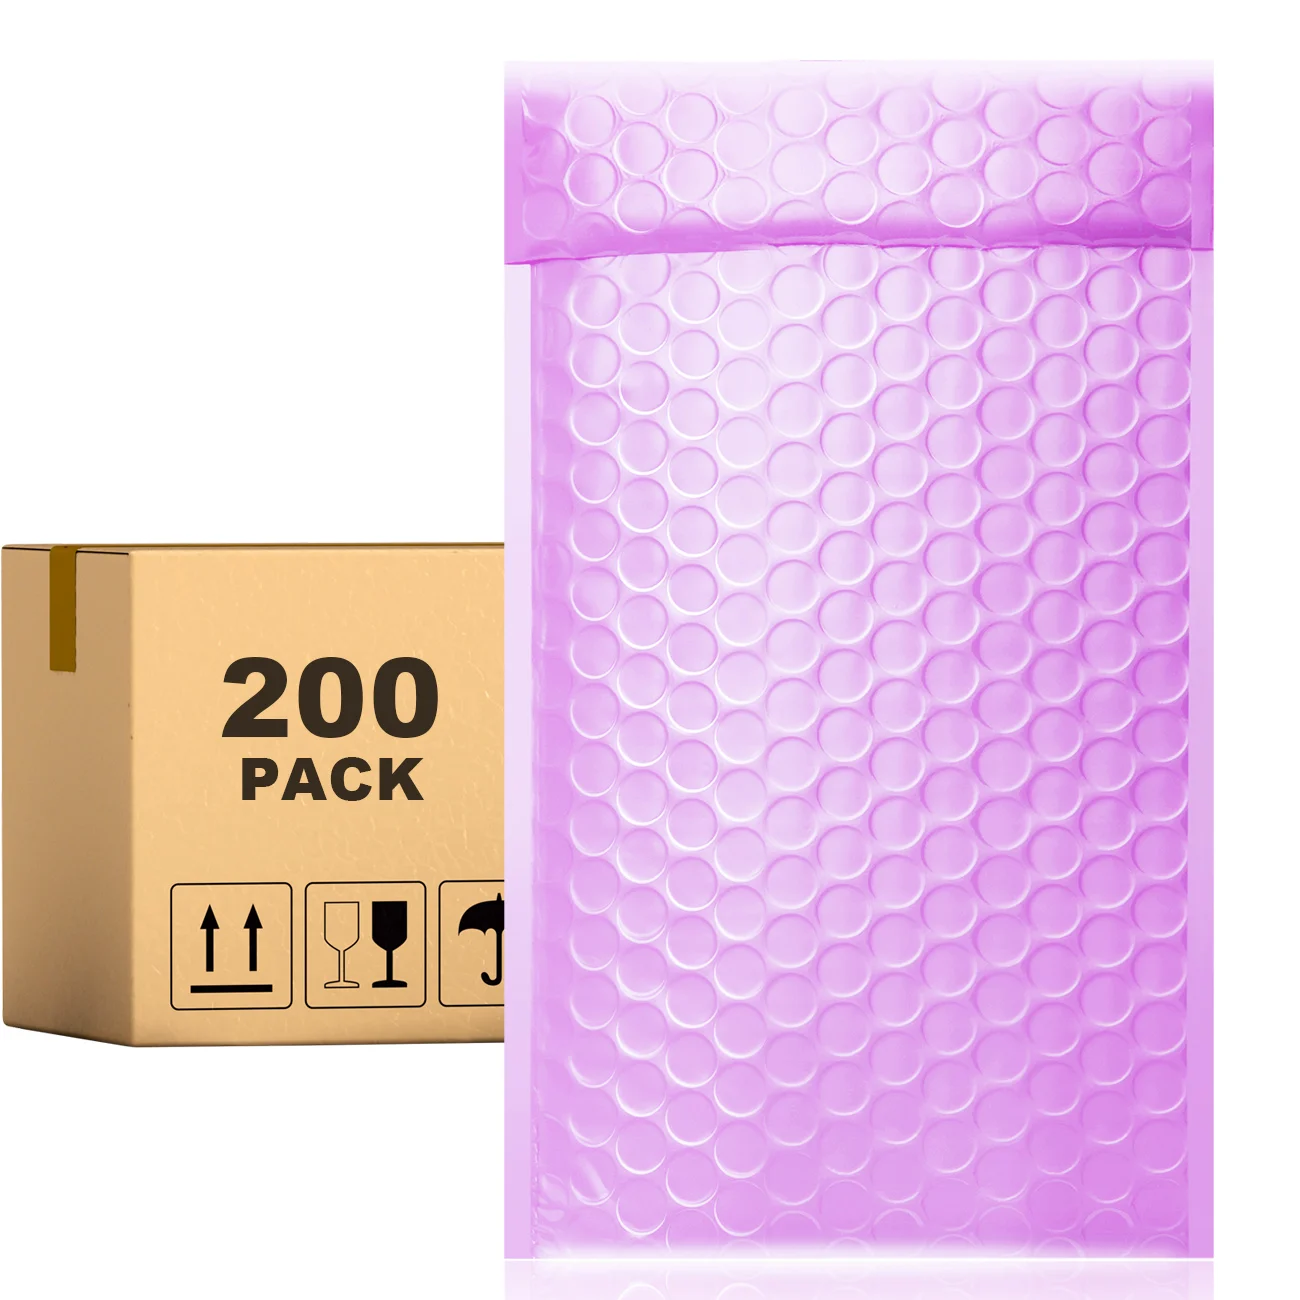 

Конверты PACKAPRO с пузырьковой пленкой, 7x10, фиолетовые, 200 шт., для упаковки, отправки, доставки